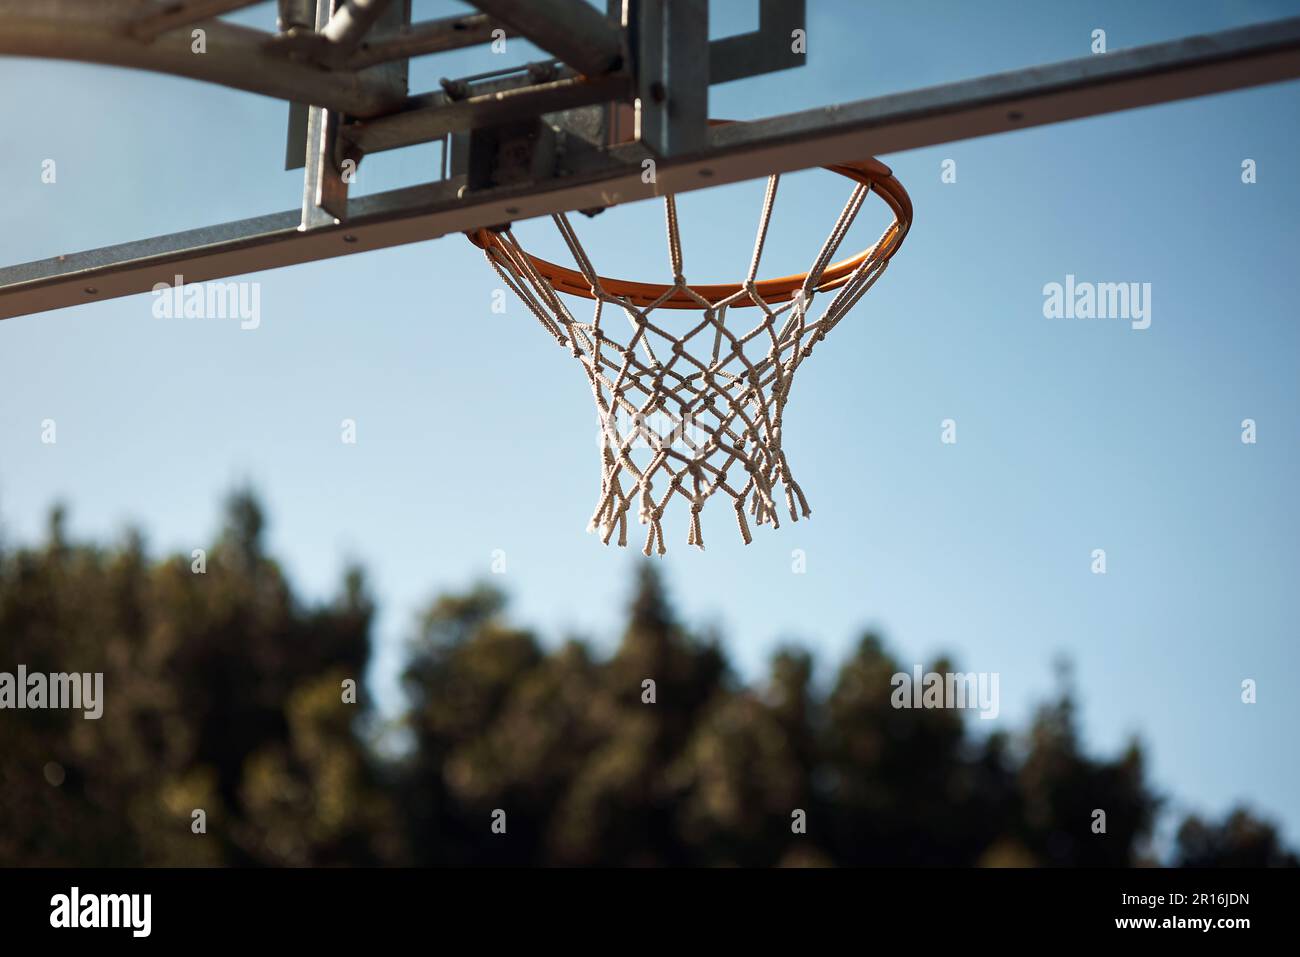 Das ist deine Chance, einen Versuch zu wagen. Nahaufnahme eines Basketballkörpers auf einem Sportplatz. Stockfoto